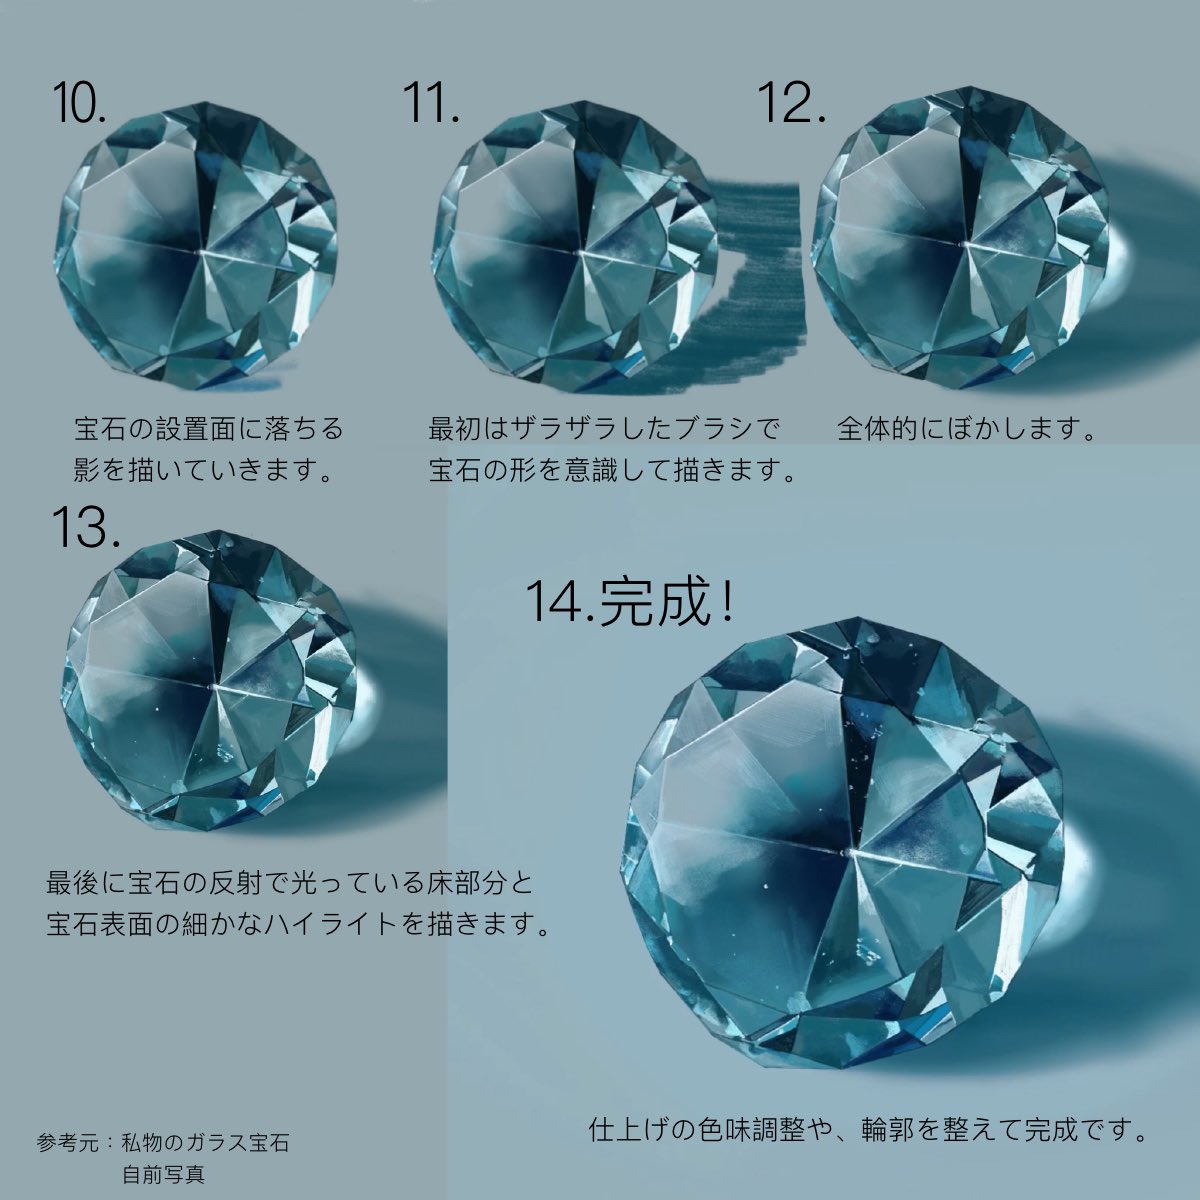 青ヰ 鱗 Aoi Uroko 宝石の塗り方 T Co 3v2ti6ftbt Twitter